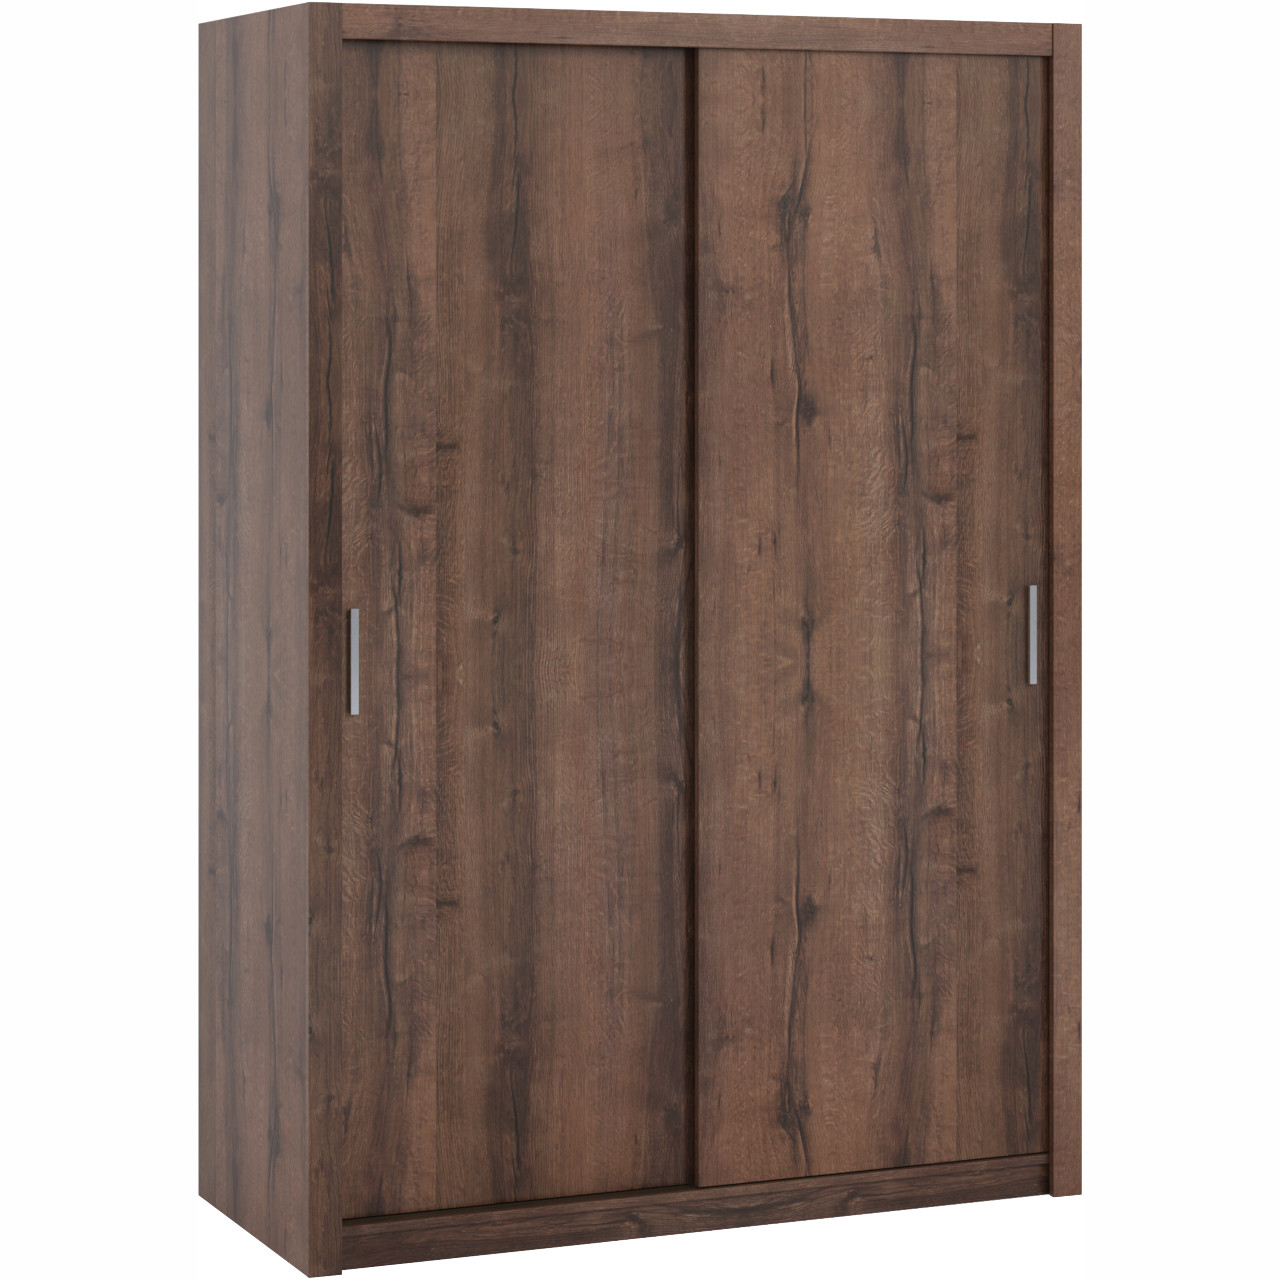 Wardrobe with Sliding Doors 150 BONO BO08 monastery oak